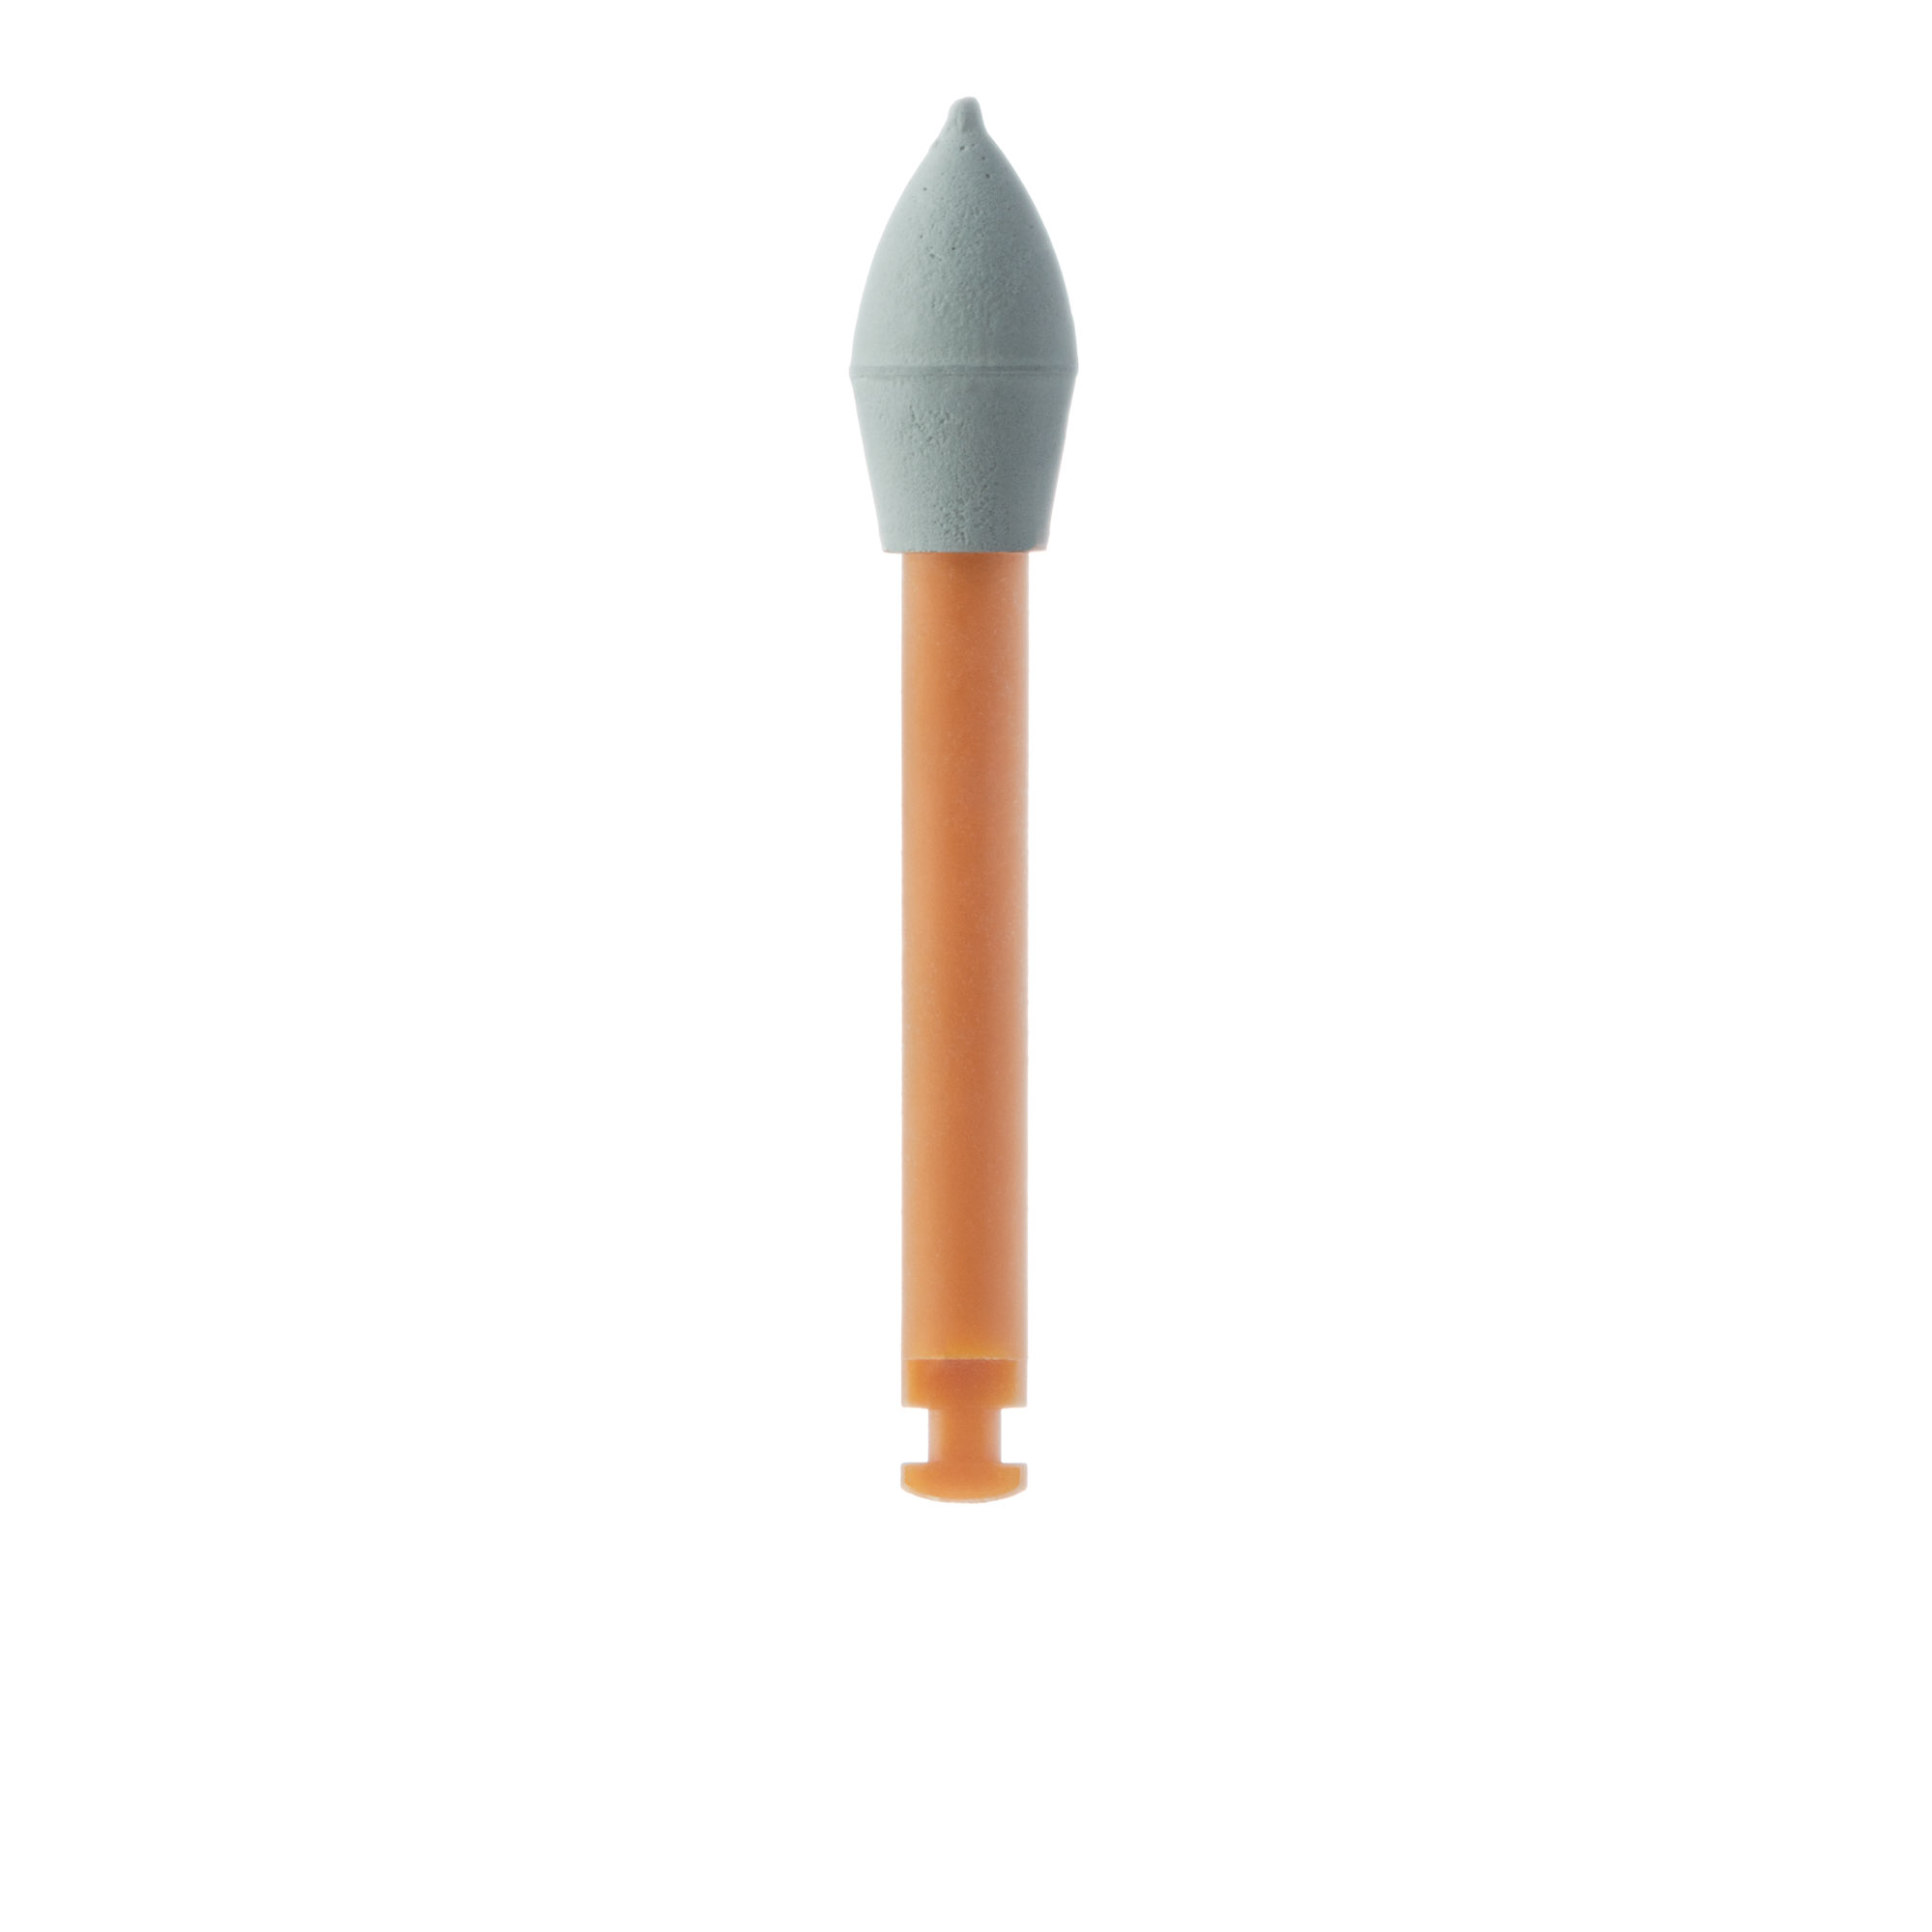 D9780-041-RA Polisher, Elevation Single-Use, Flame, 4.1mm Ø, RA